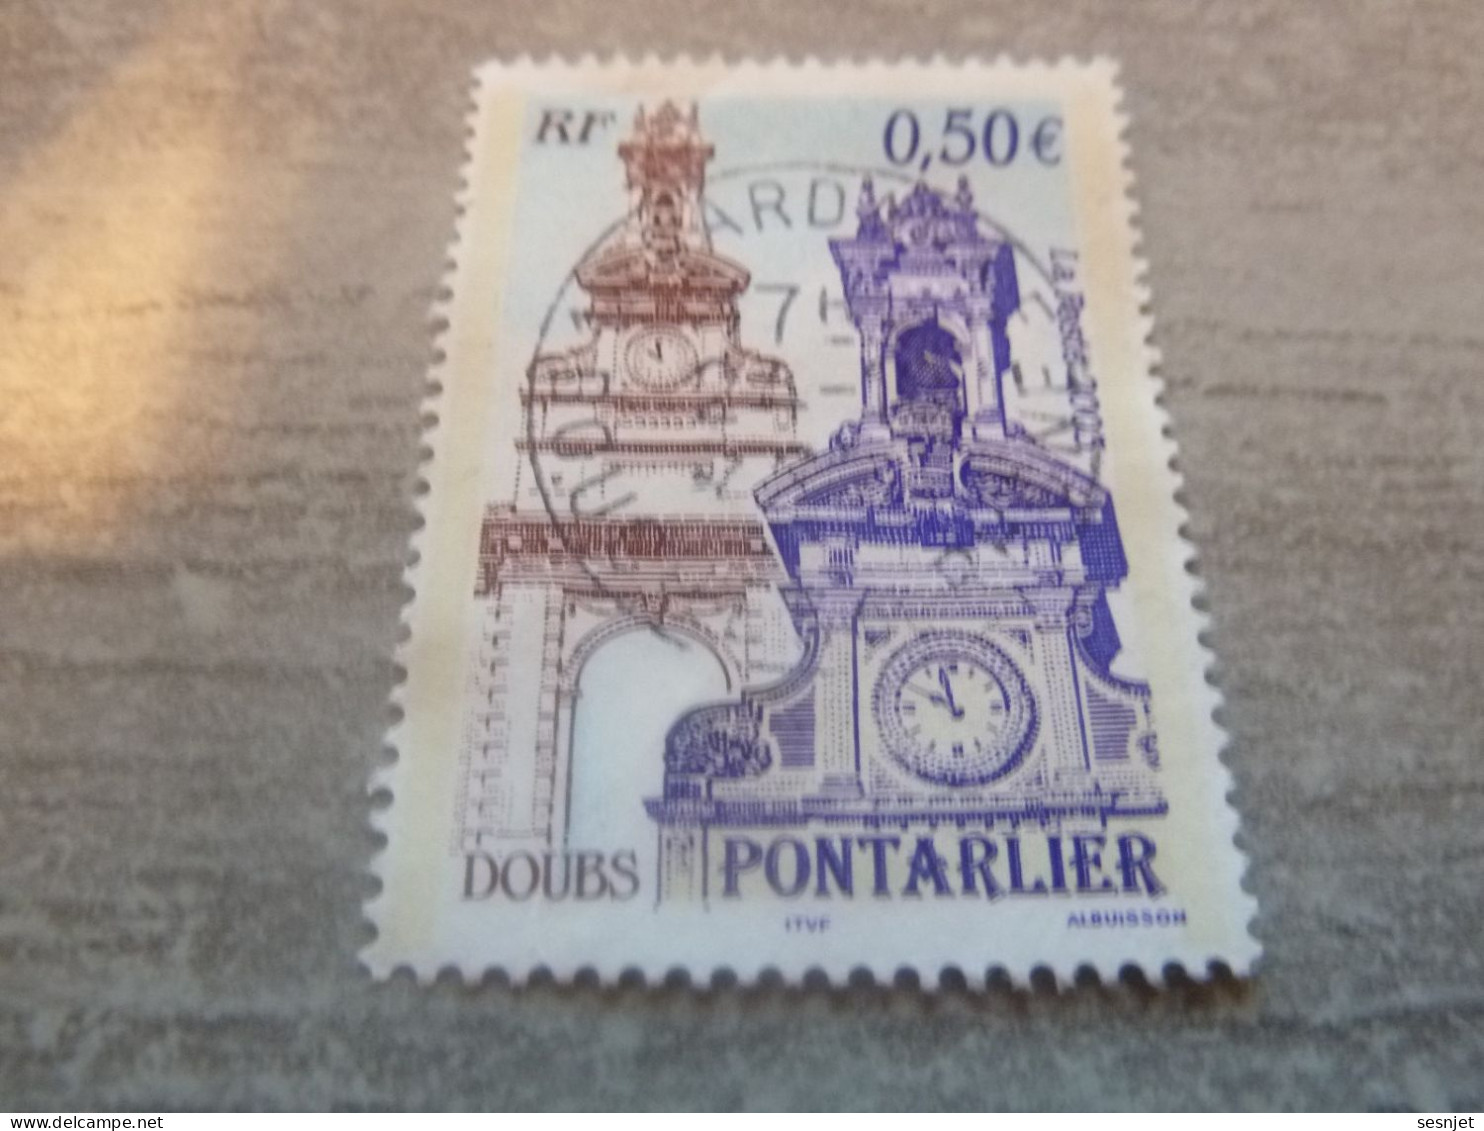 Pontarlier - La Porte Saint-Pierre - 0.50 € - Yt 3608 - Multicolore - Oblitéré - Année 2003 - - Used Stamps